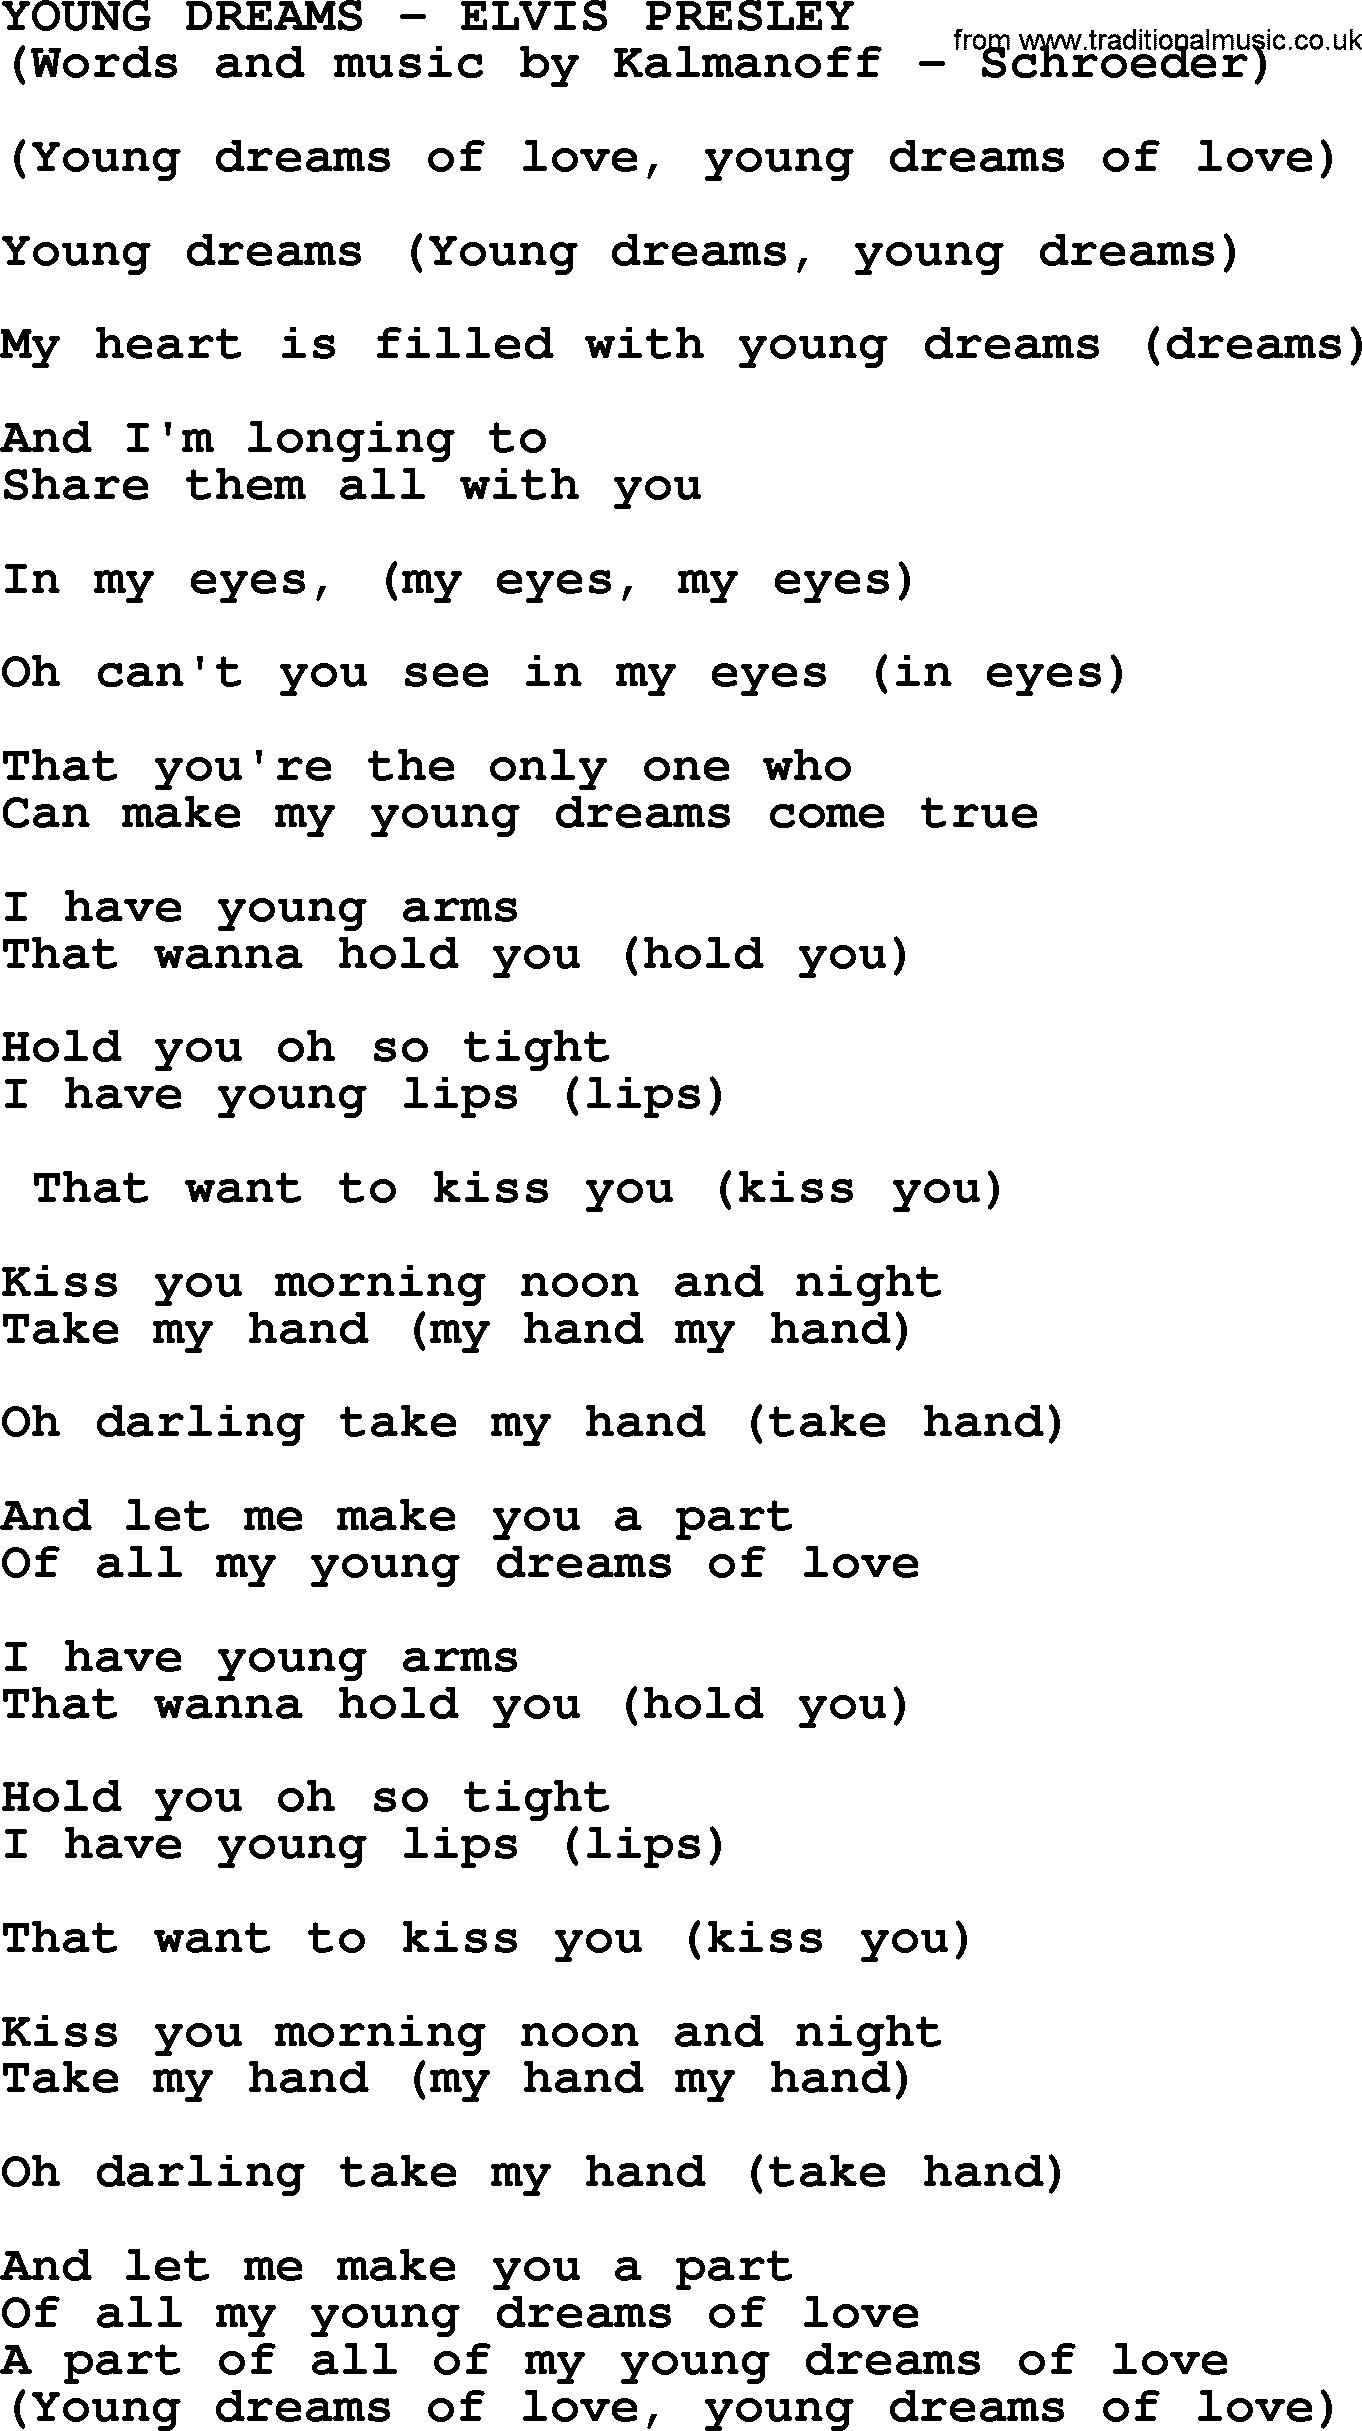 Elvis Presley song: Young Dreams lyrics